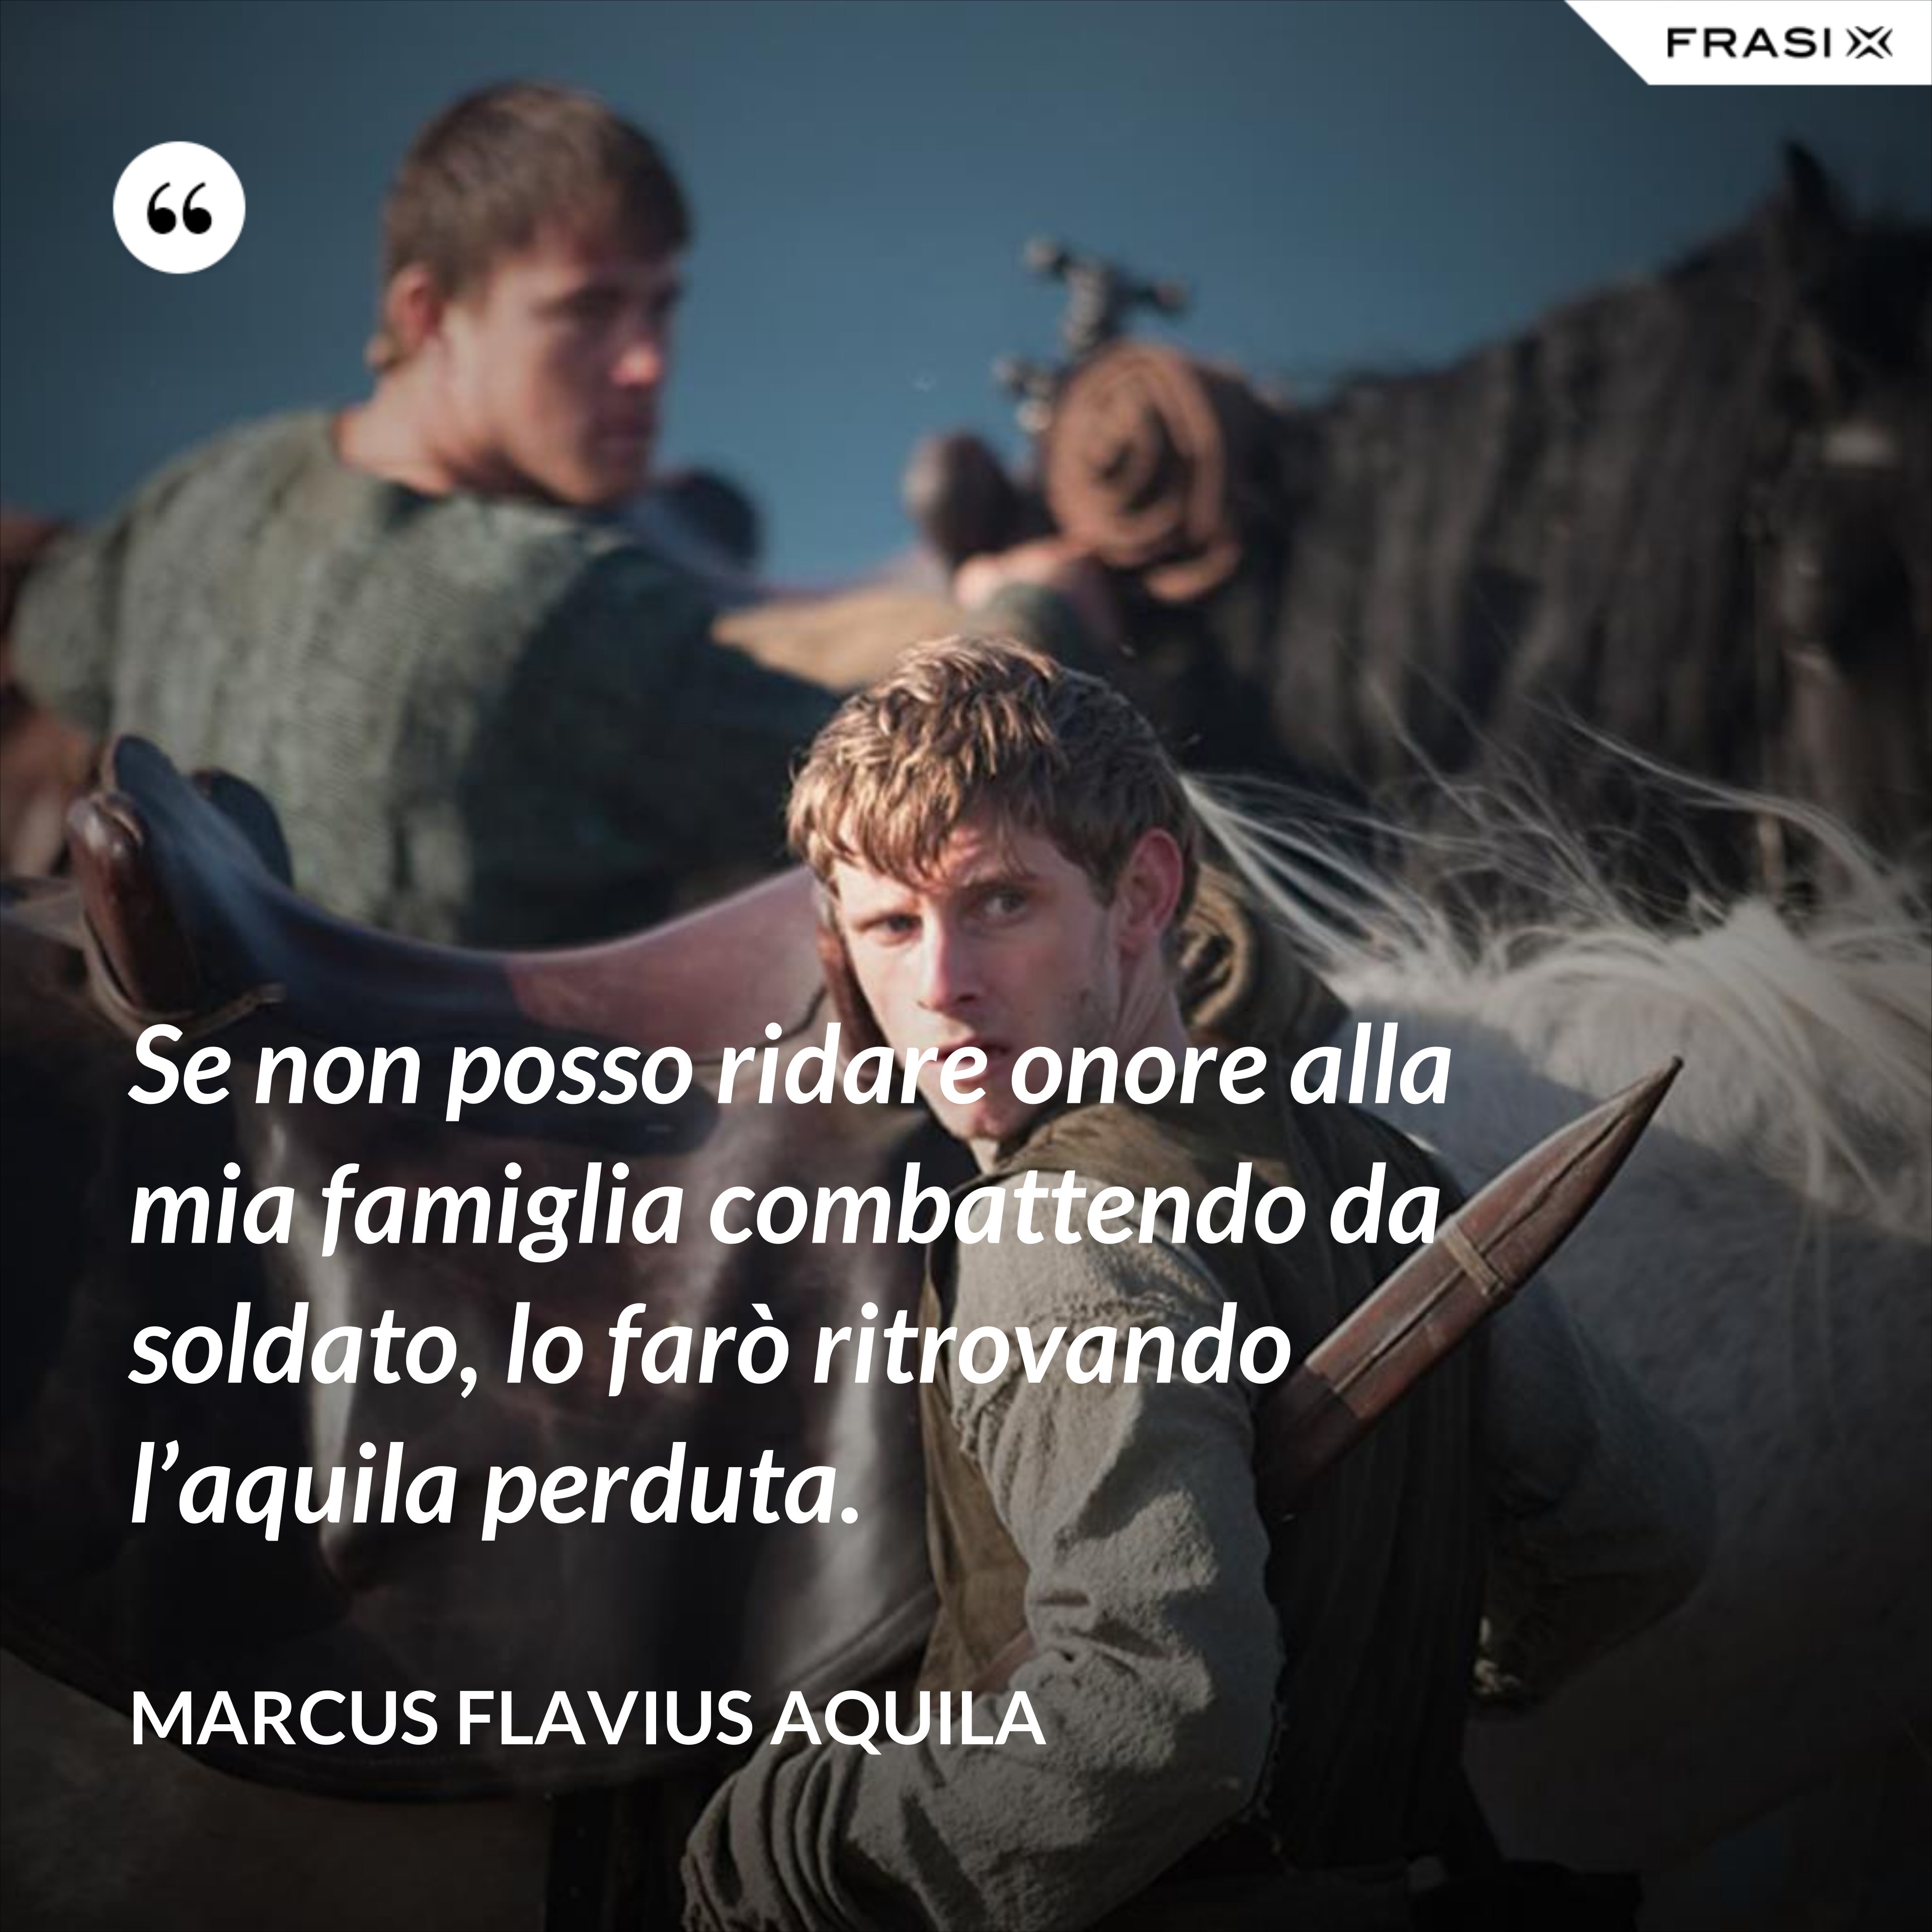 Se non posso ridare onore alla mia famiglia combattendo da soldato, lo farò ritrovando l’aquila perduta. - Marcus Flavius Aquila